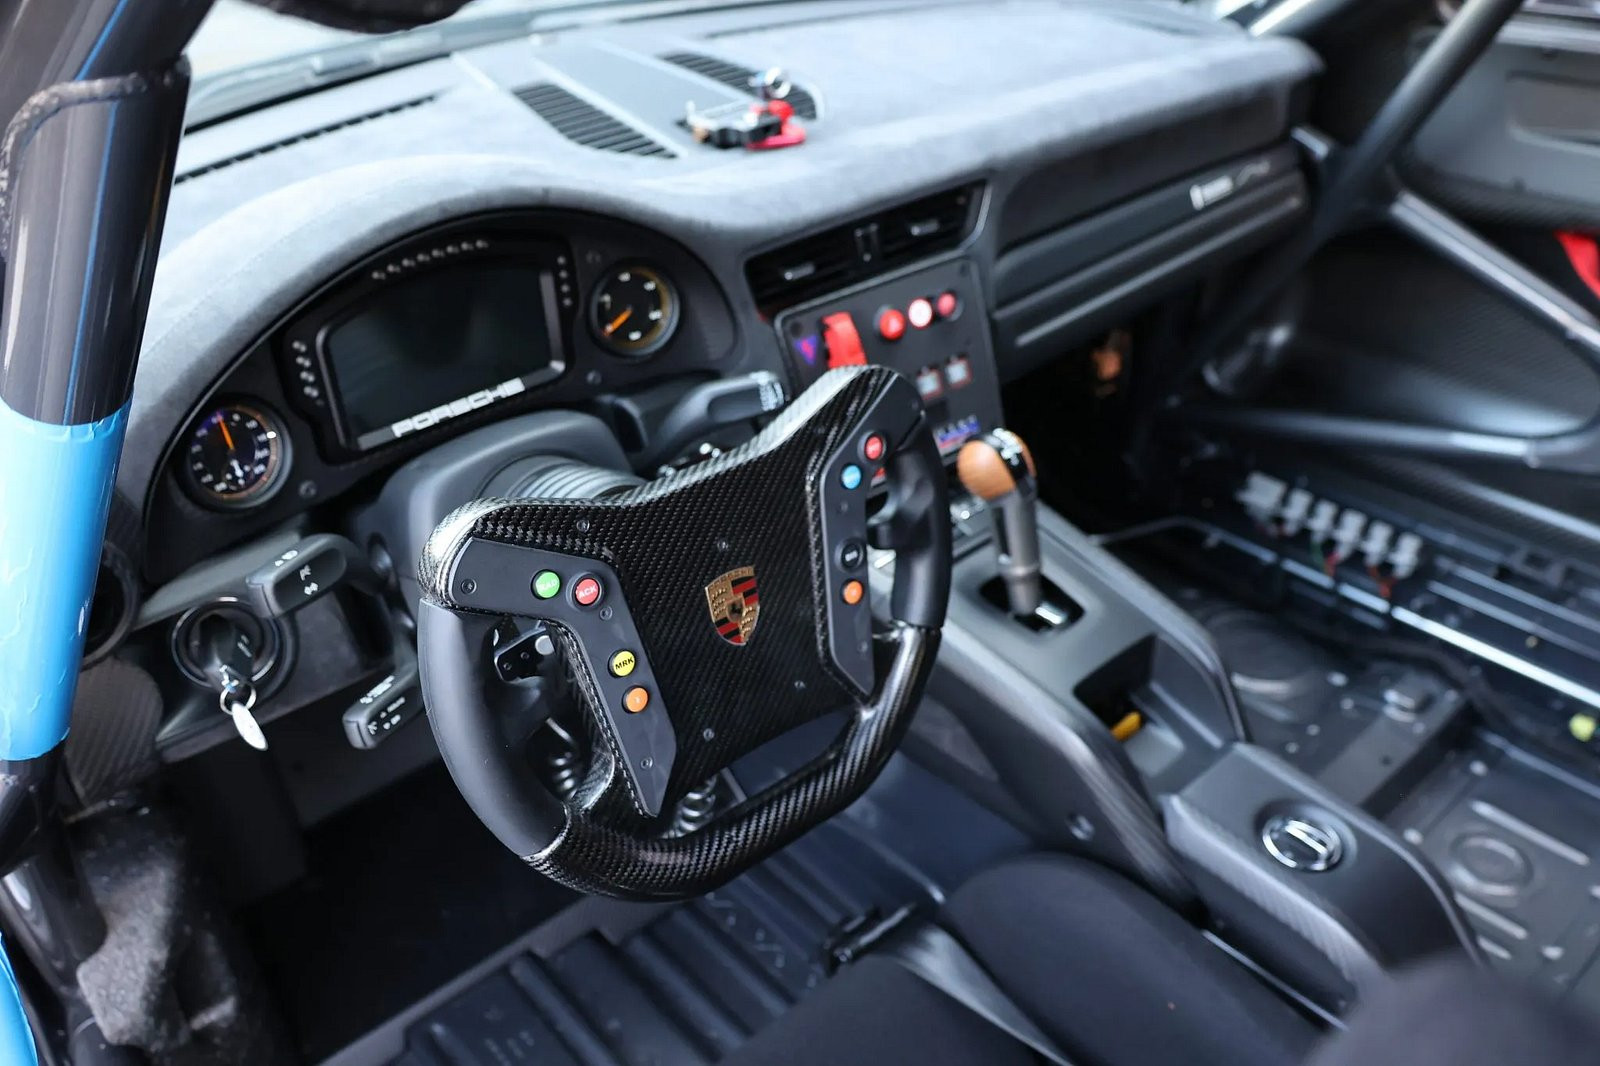 Siêu xe Porsche 935 2019 cực hiếm lên sàn đấu giá, mức khởi điểm 1 triệu đô la